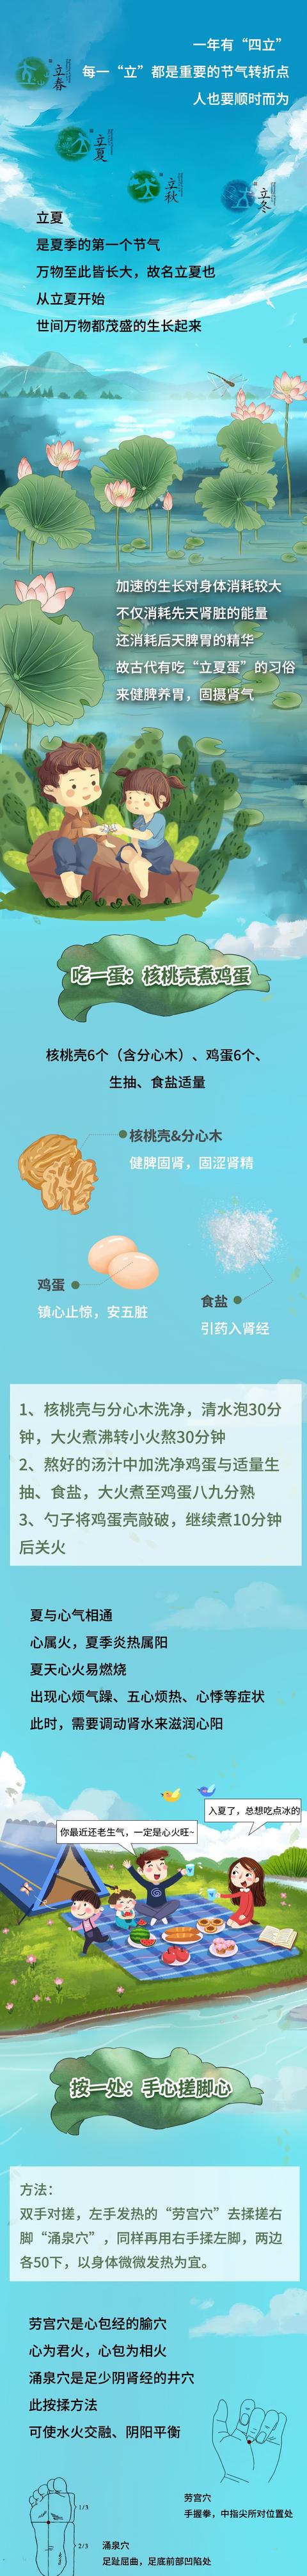 核桃壳煮鸡蛋禁忌,核桃壳煮鸡蛋治什么病(1)